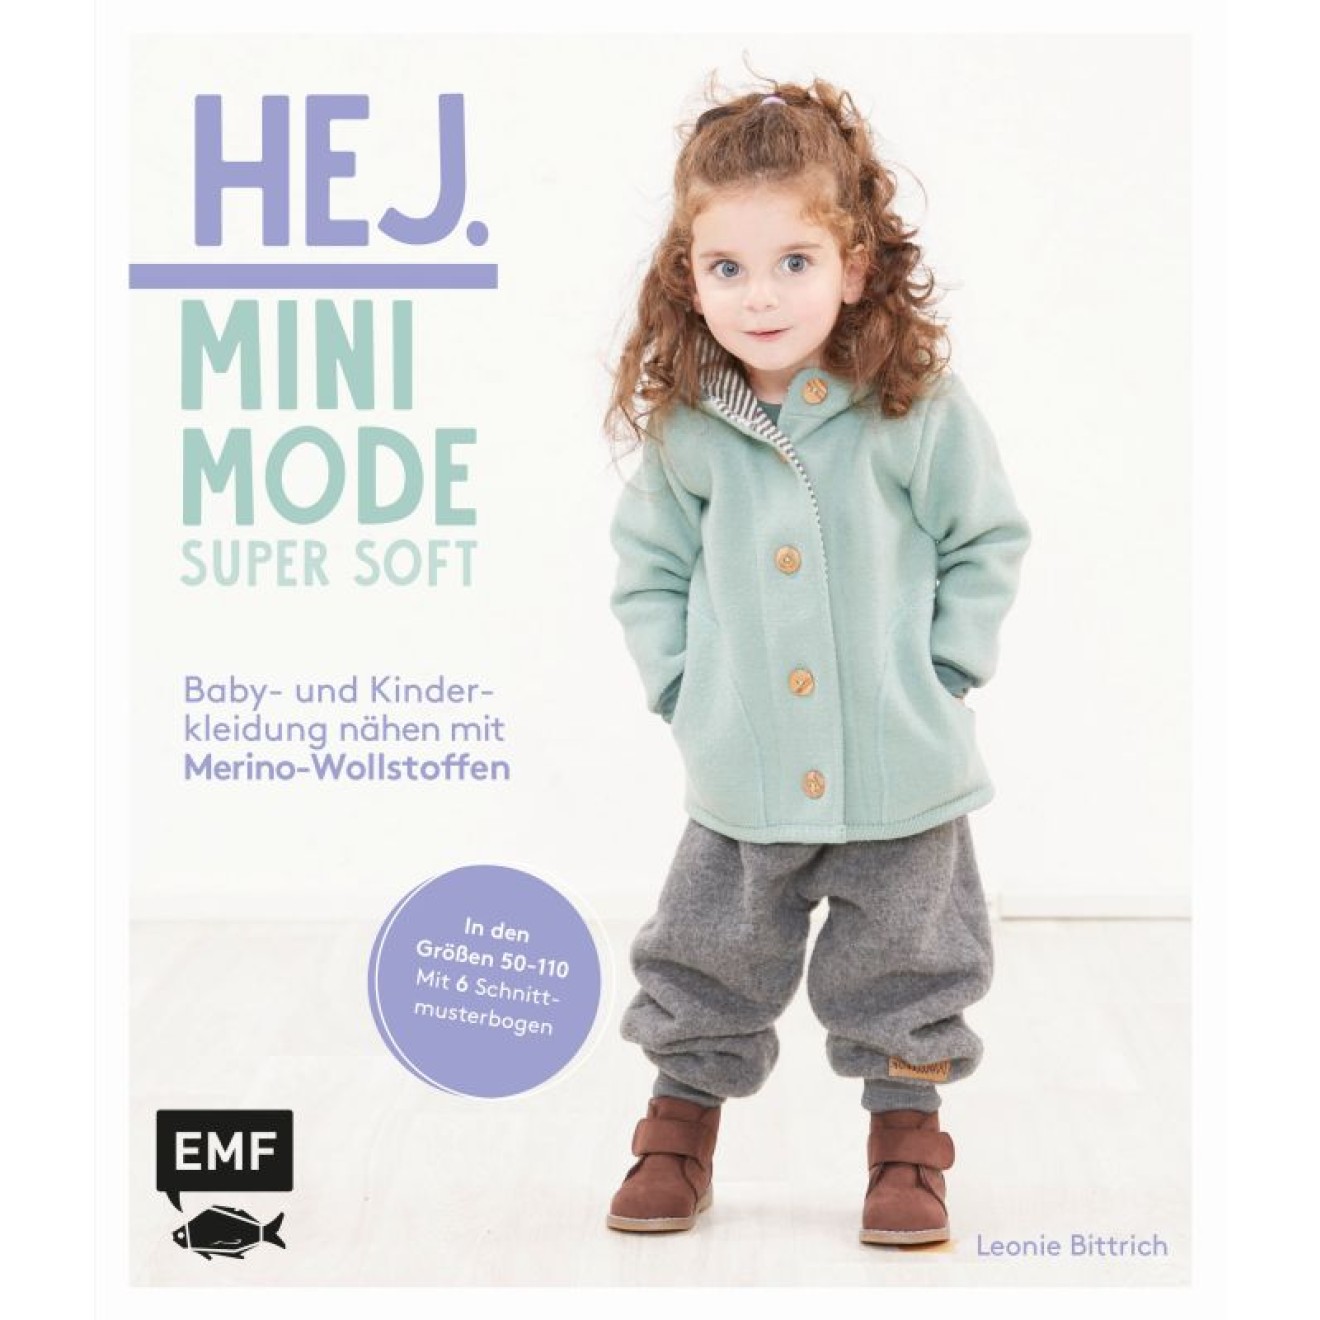 Hej Minimode – Super soft: Baby- und Kinderkleidung nähen mit Merino-Wollstoffen